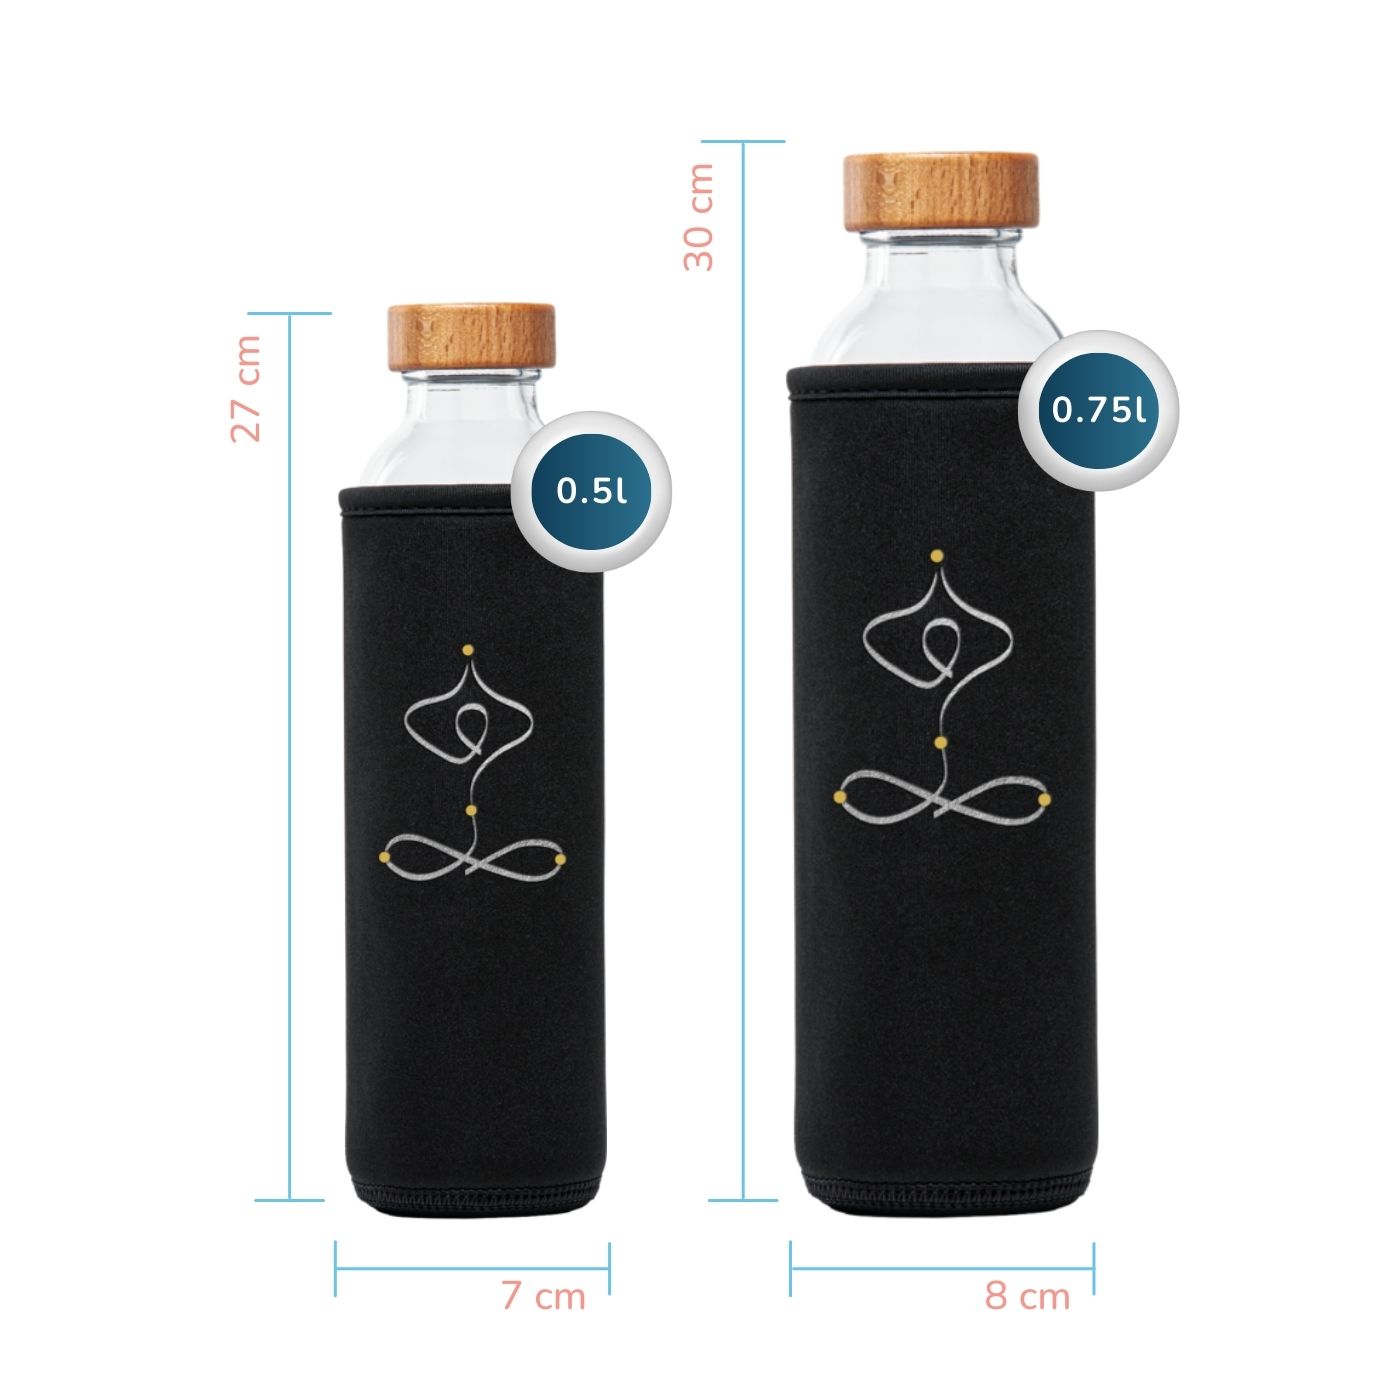 tamaños de la botella de agua de cristal Flaska con funda protectora de neopreno y diseño de yoga Calm